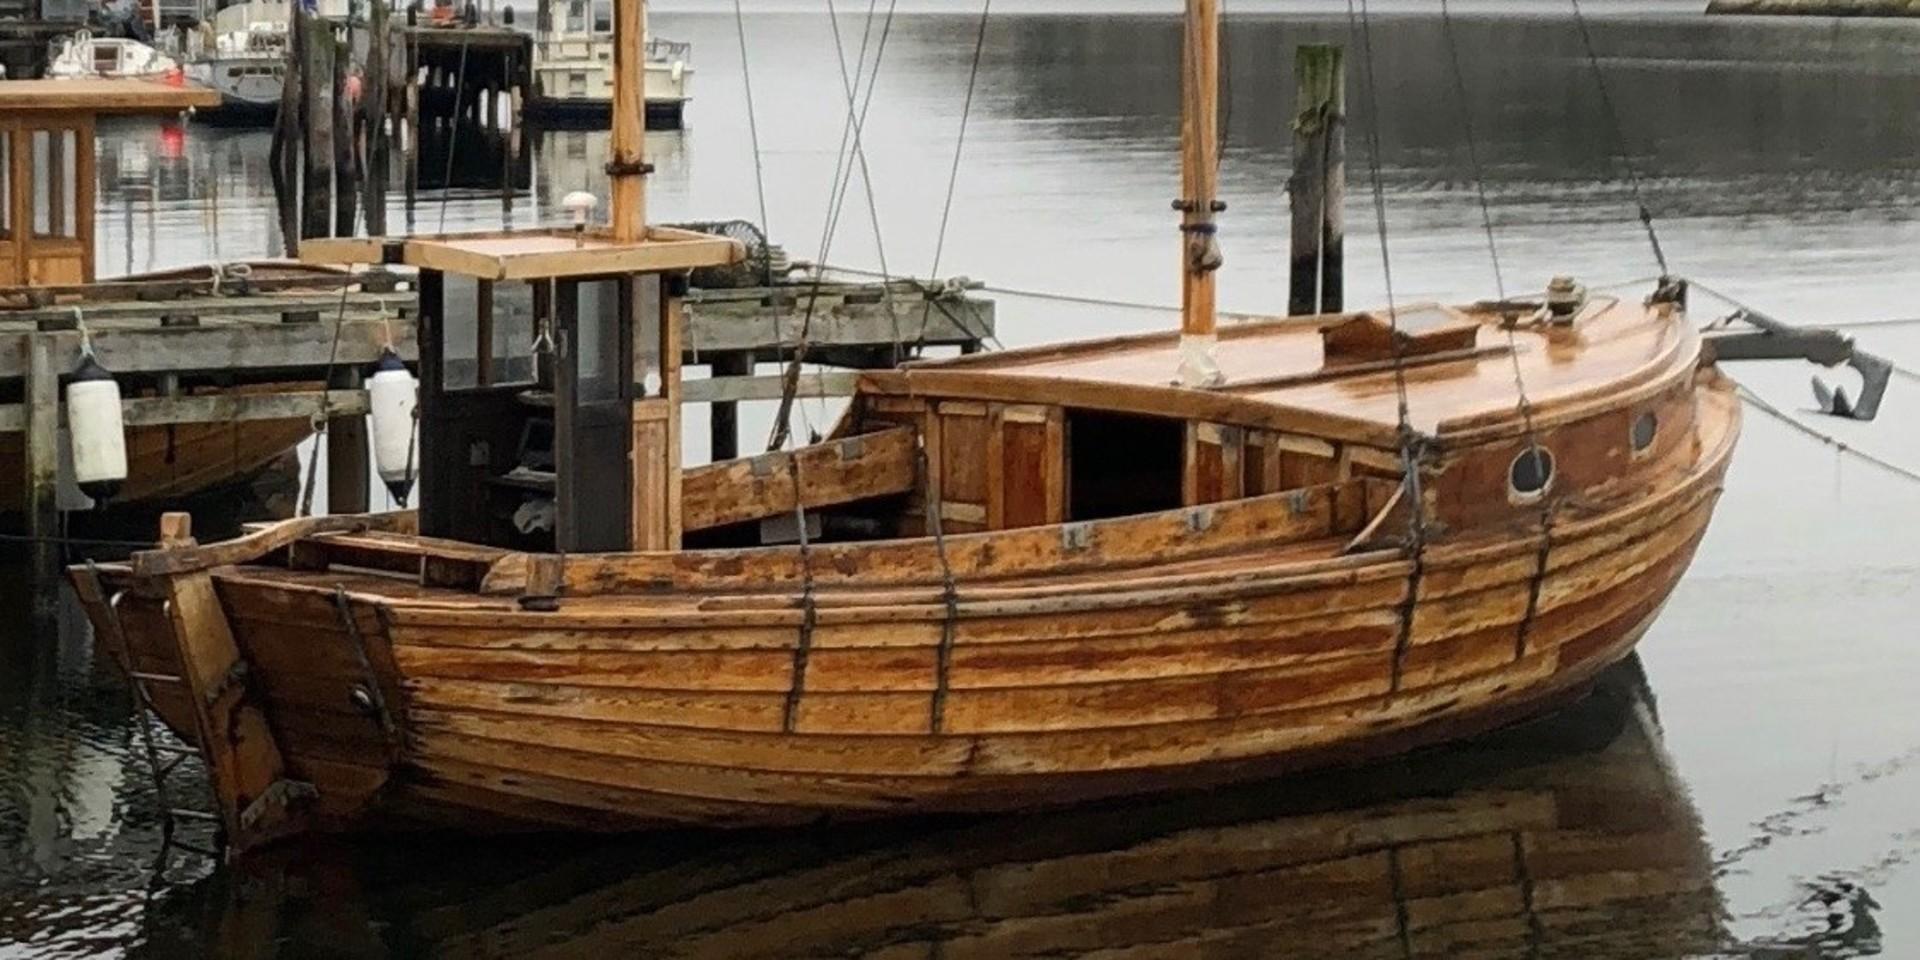 Natten till lördagen stals en äldre båt vid Everts sjöbod i Grebbestad.